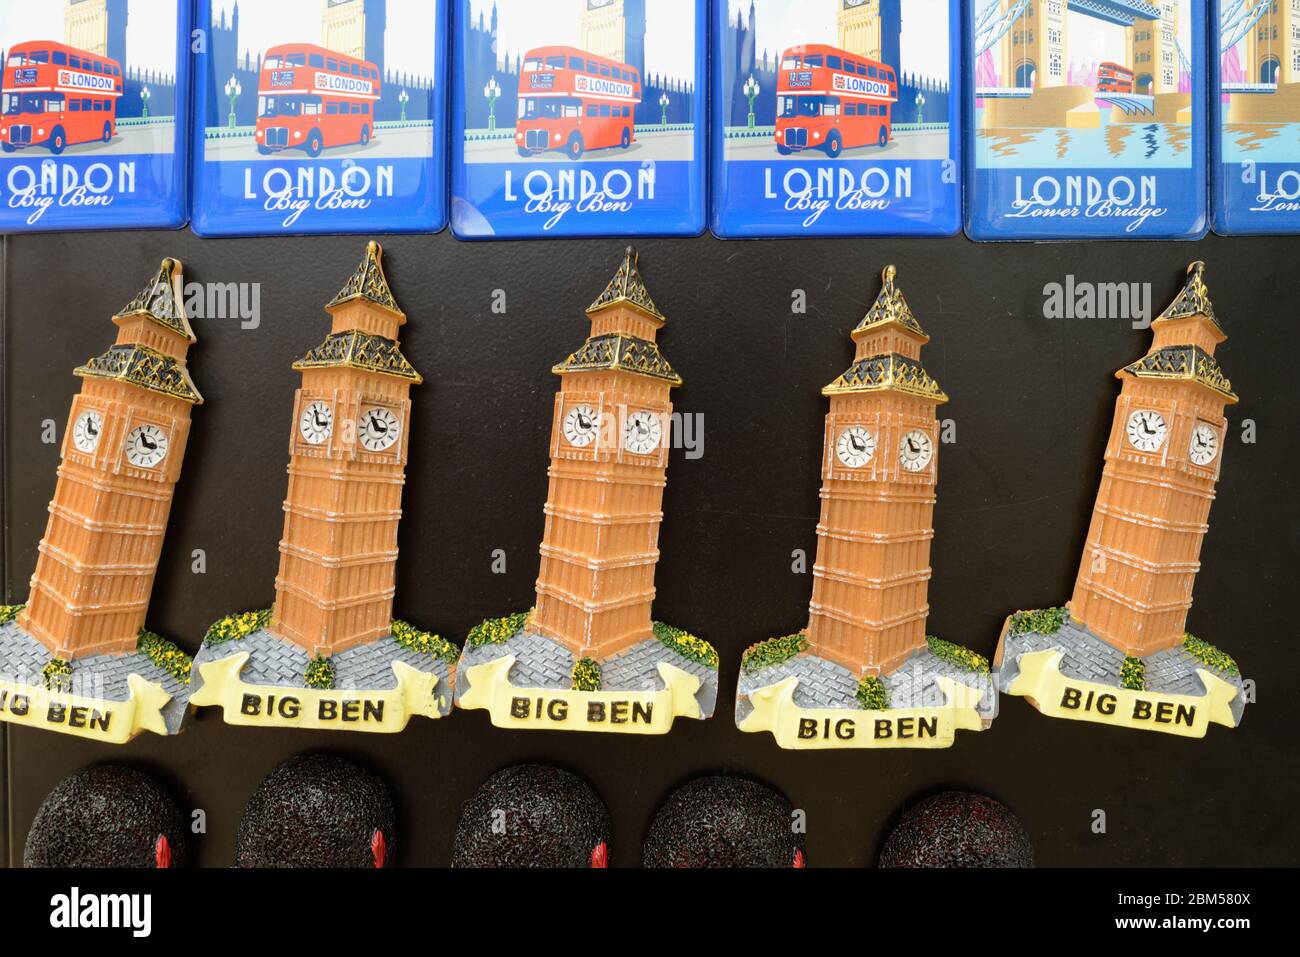 Aimants souvenir de tourisme Big Ben à vendre dans la boutique de cadeaux ou souvenir Stall Londres Angleterre Royaume-Uni Banque D'Images